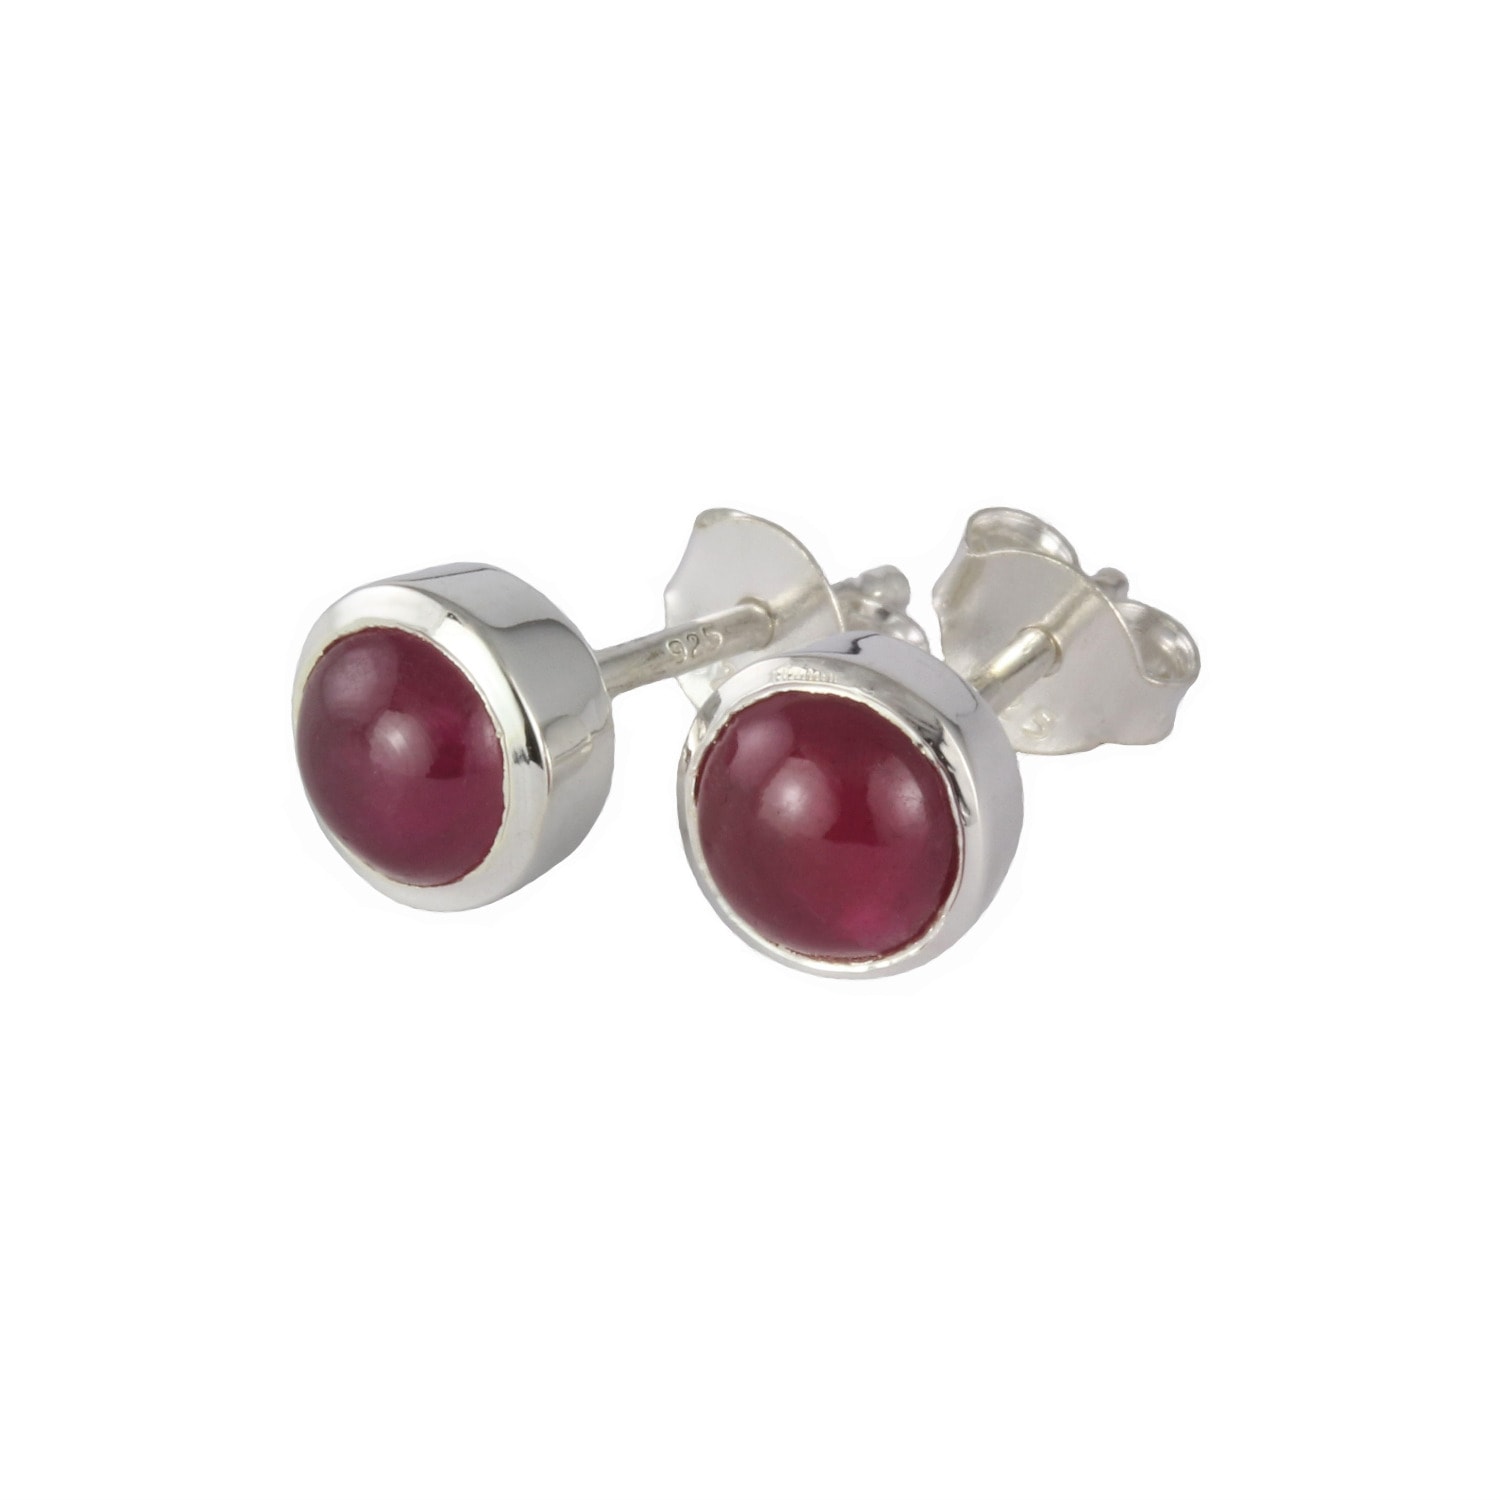 Women’s Silver / Red July Birthstone Earrings - Ruby In Sterling Silver The Jewellery Store London